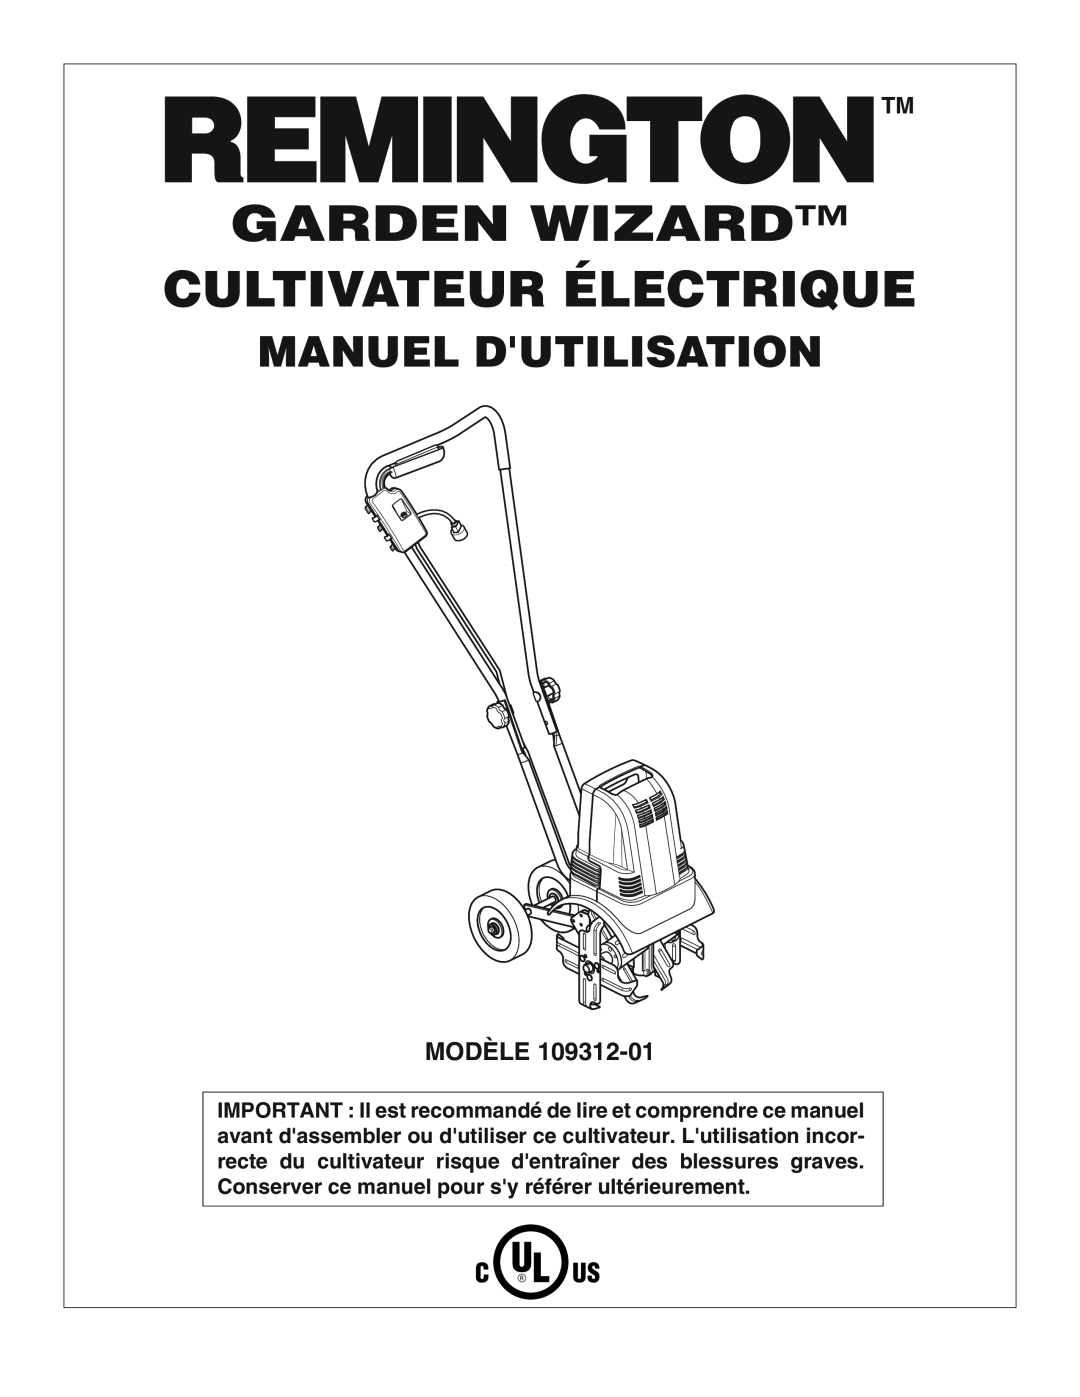 Remington 109312-01 owner manual Garden Wizard Cultivateur Électrique, Manuel Dutilisation, Modèle 